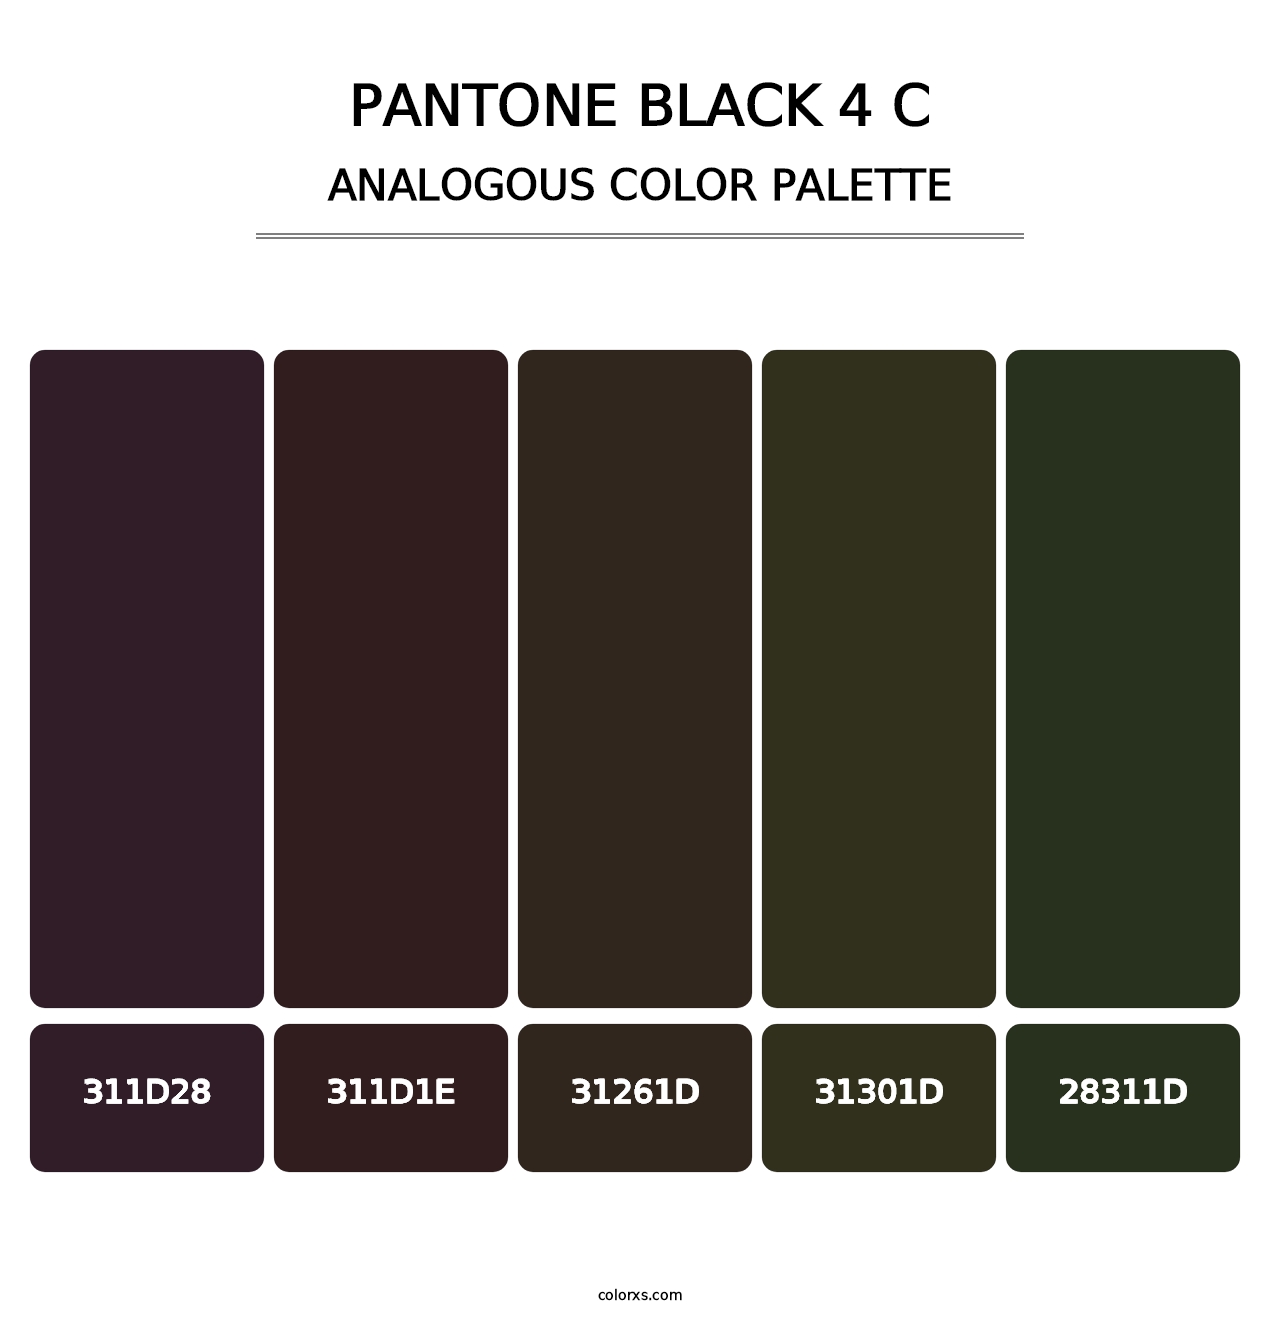 PANTONE Black 4 C - Analogous Color Palette